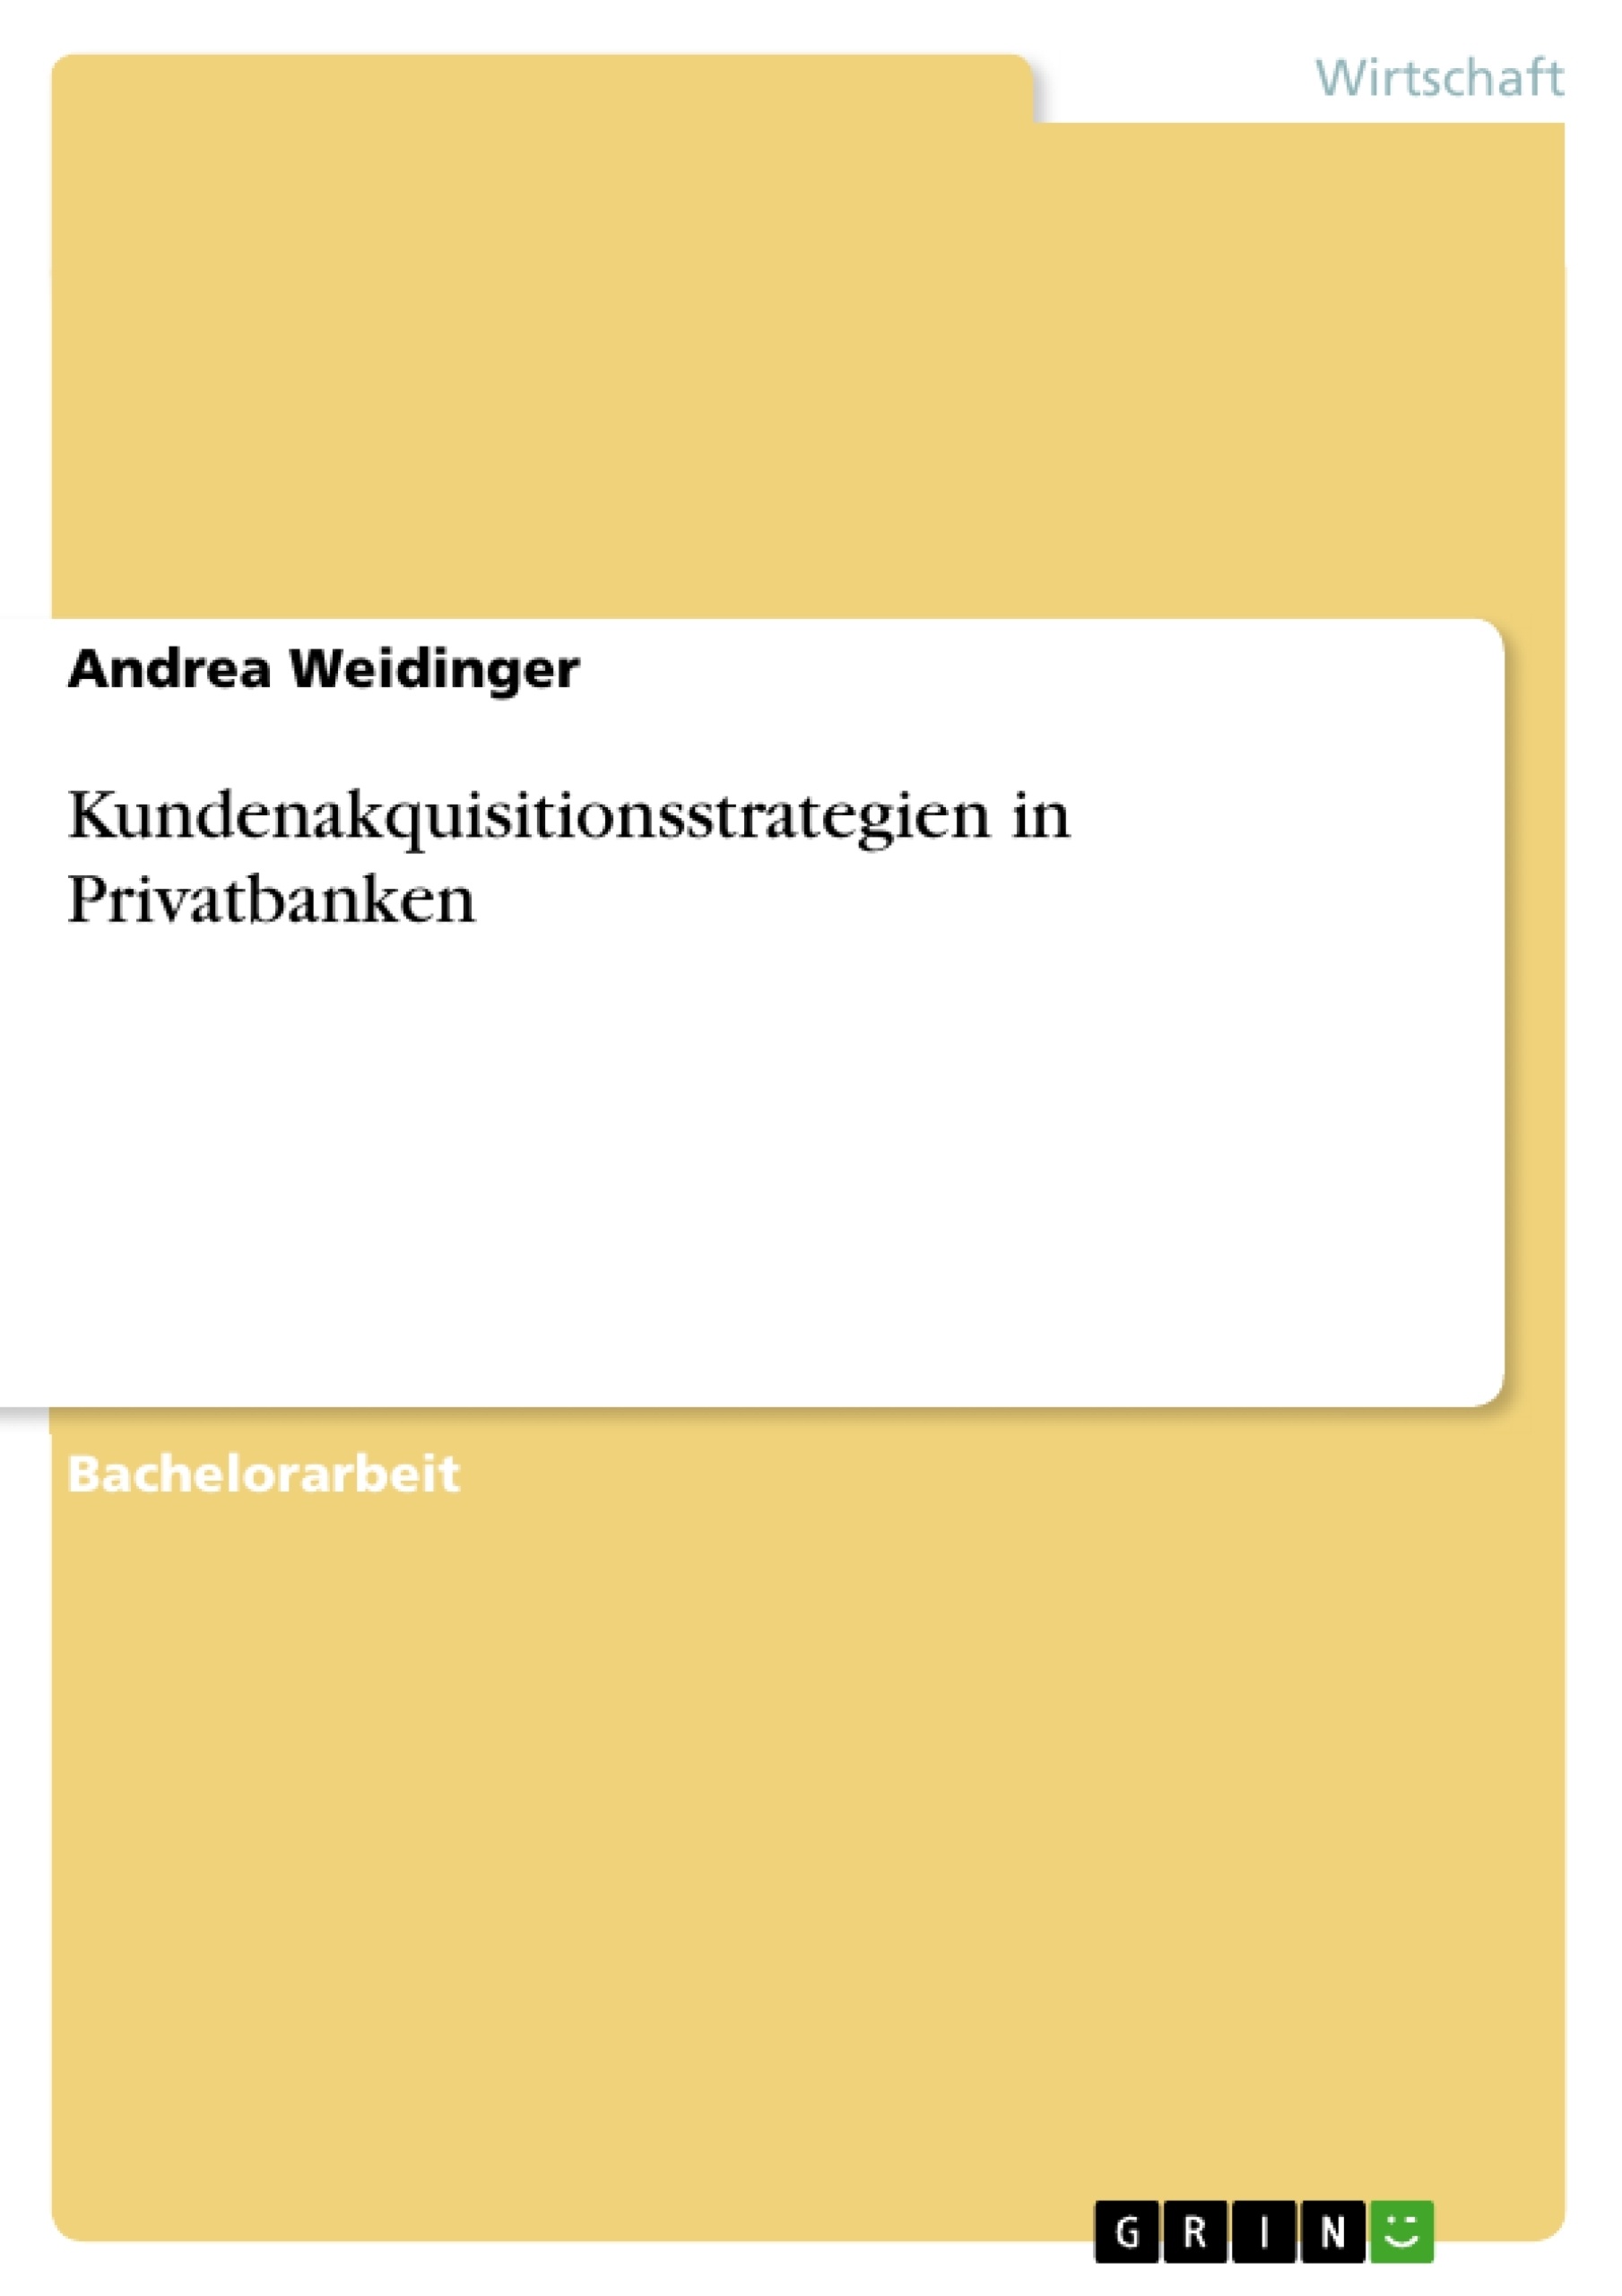 Título: Kundenakquisitionsstrategien in Privatbanken